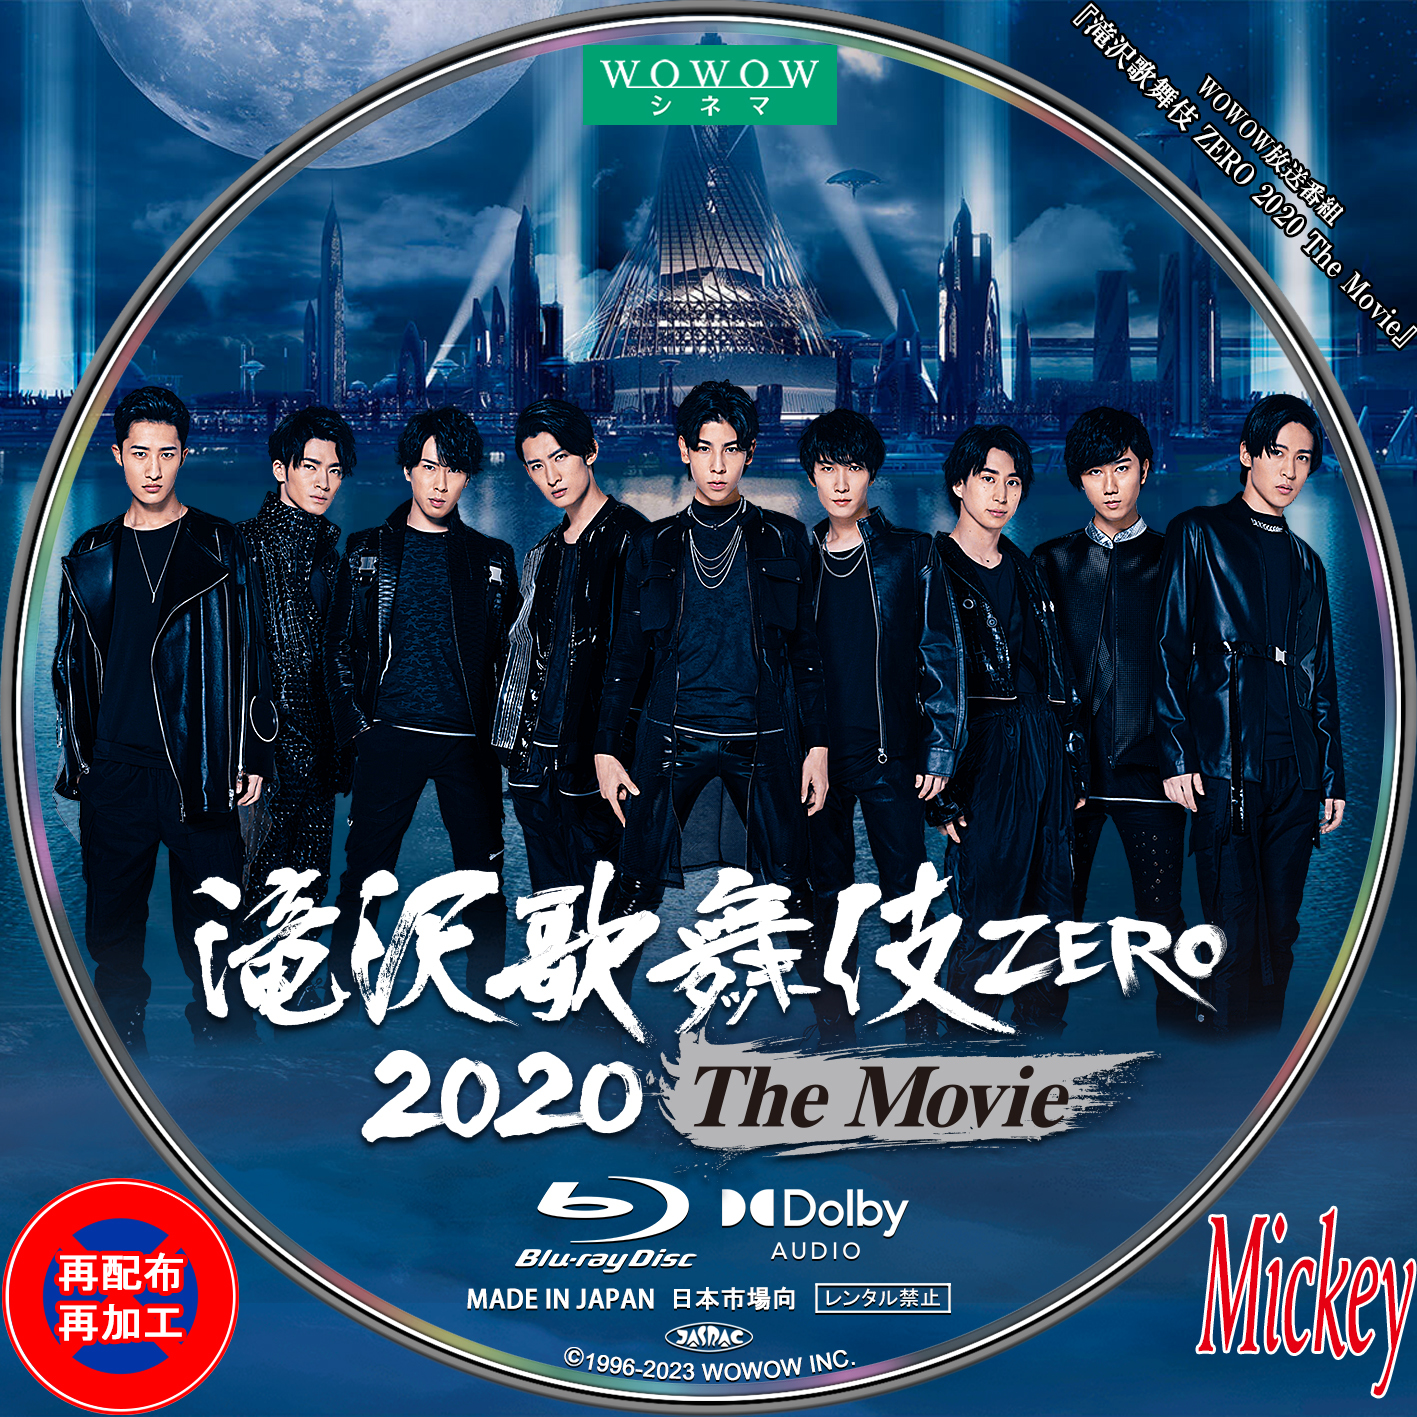 滝沢歌舞伎ZERO 2020 The Movie 初回盤 DVD ブルーレイ QM8dT 